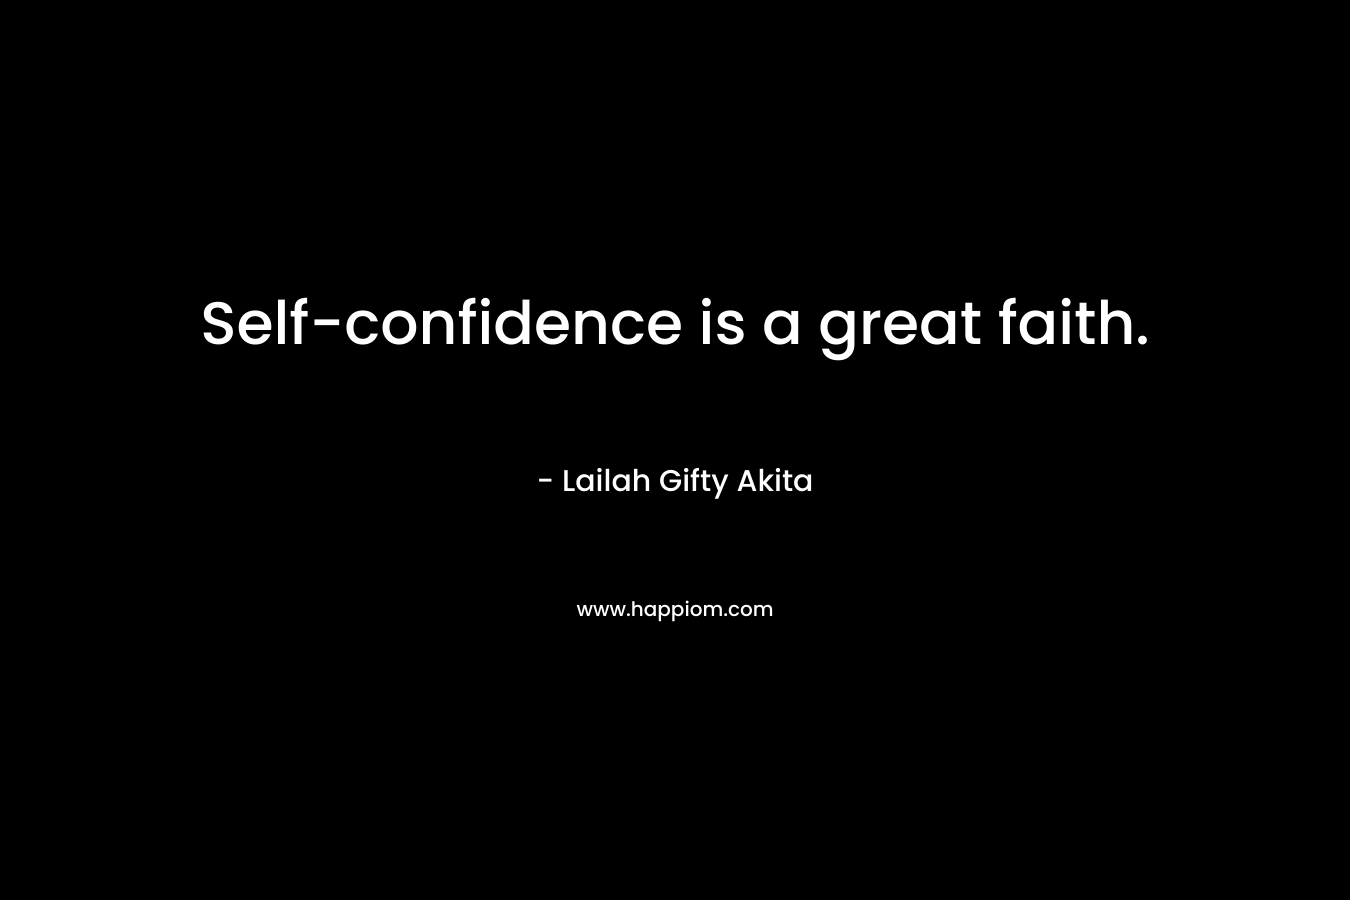 Self-confidence is a great faith.